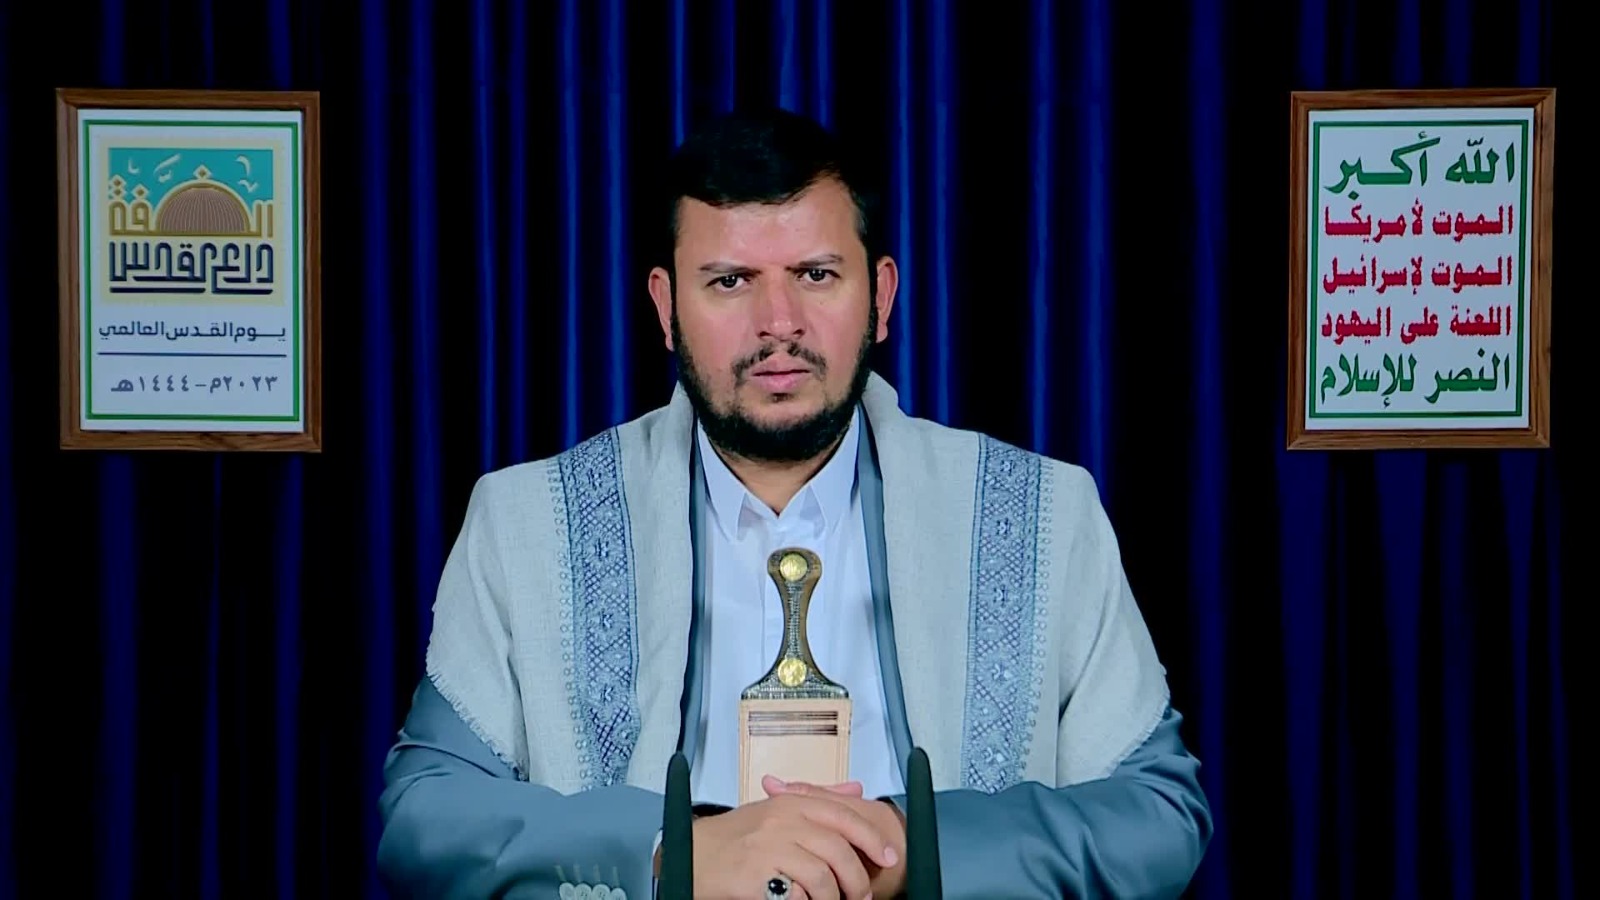 Sayyed Abdul Malik Badreddin Al-Houthi